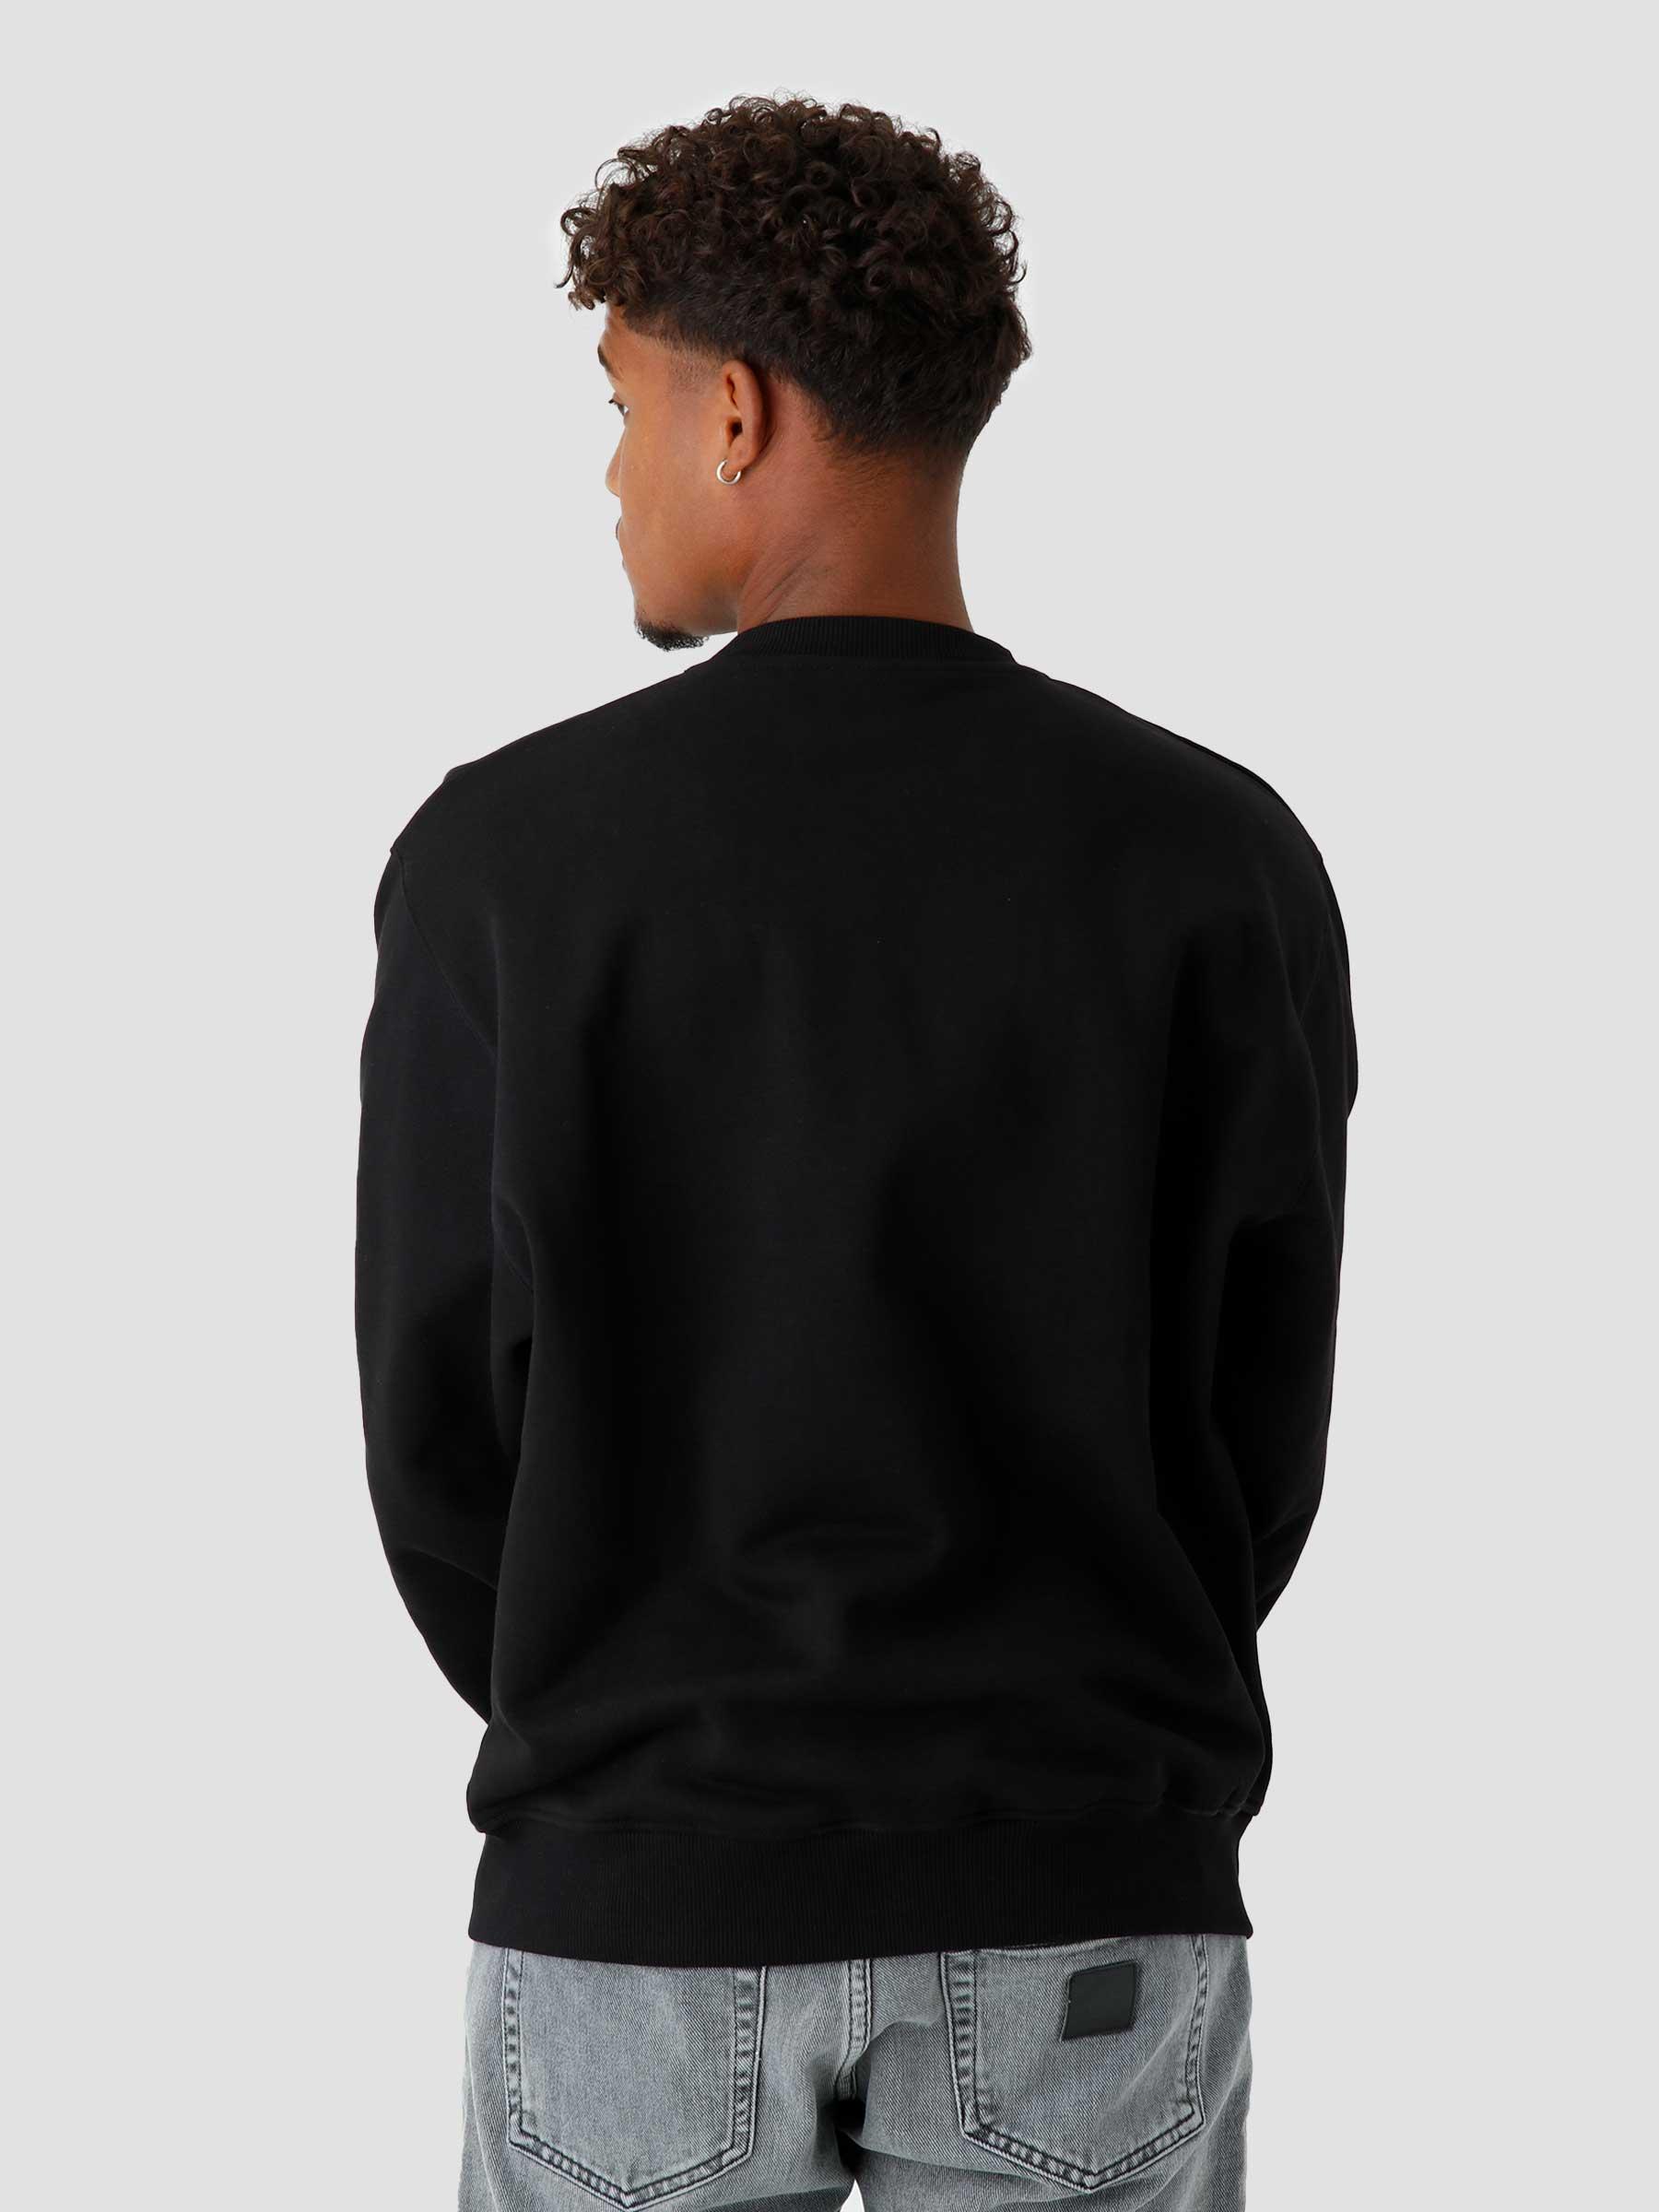 Nirway Sweater Black 2221011